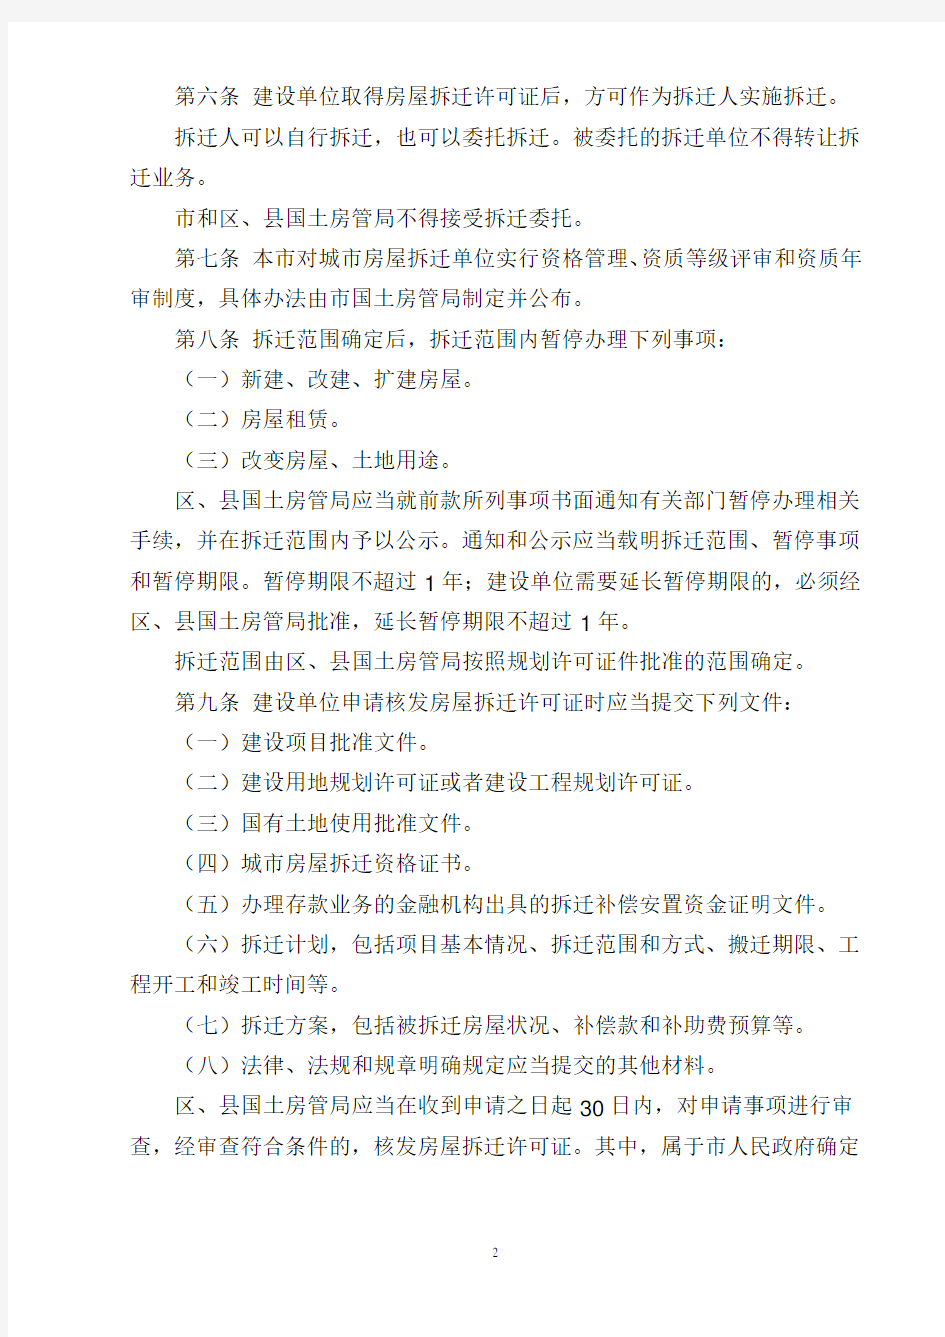 北京市城市房屋拆迁管理办法(87号令)